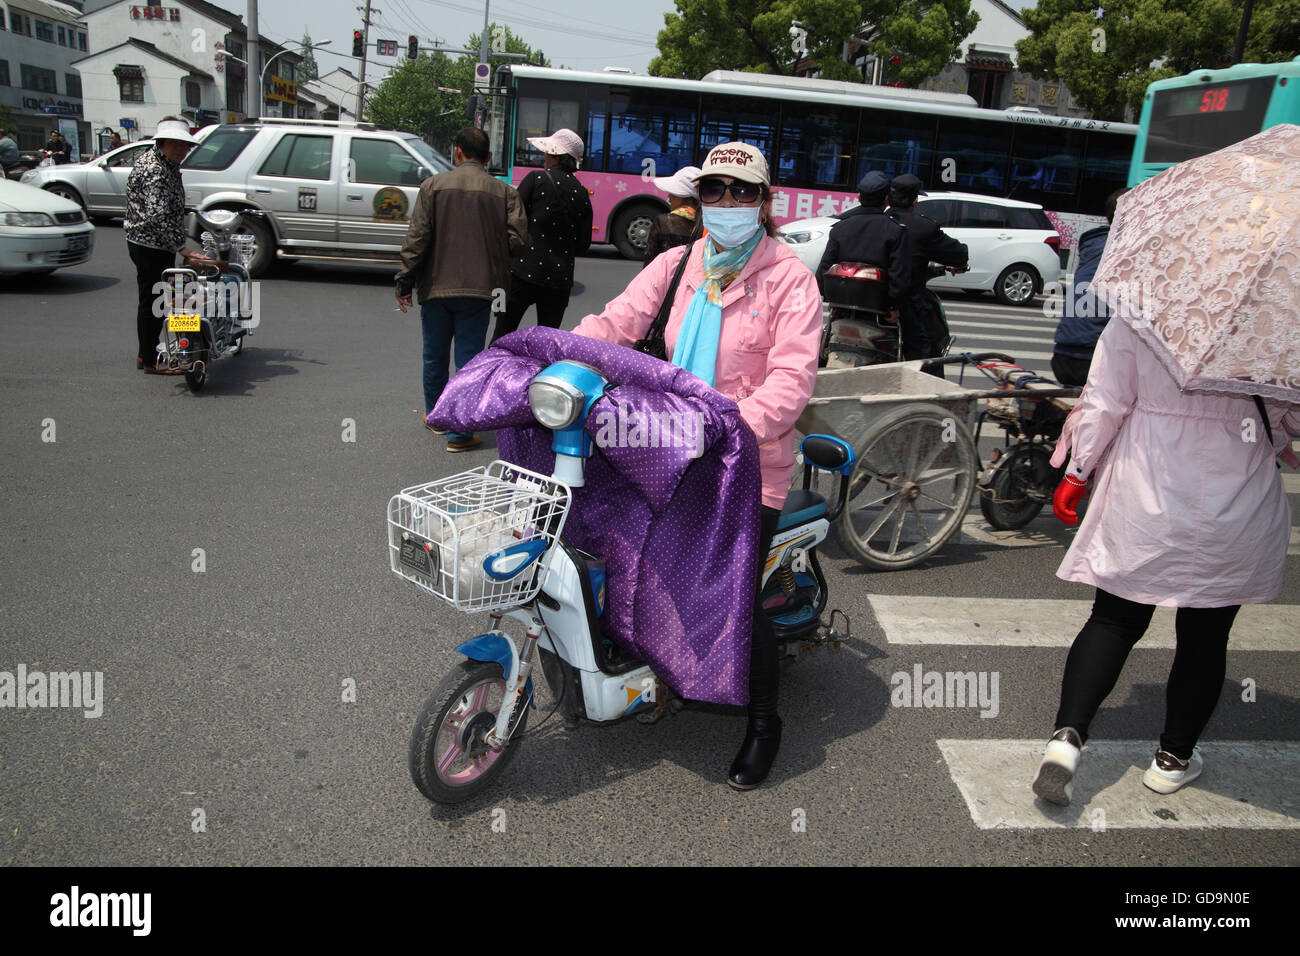 Frau mit einer Jacke, die Hände unter einer Decke und Gesicht bedeckt gegen  Verschmutzung reitet einen Roller auf einem Zebrastreifen, andere sind auch  auf Stockfotografie - Alamy